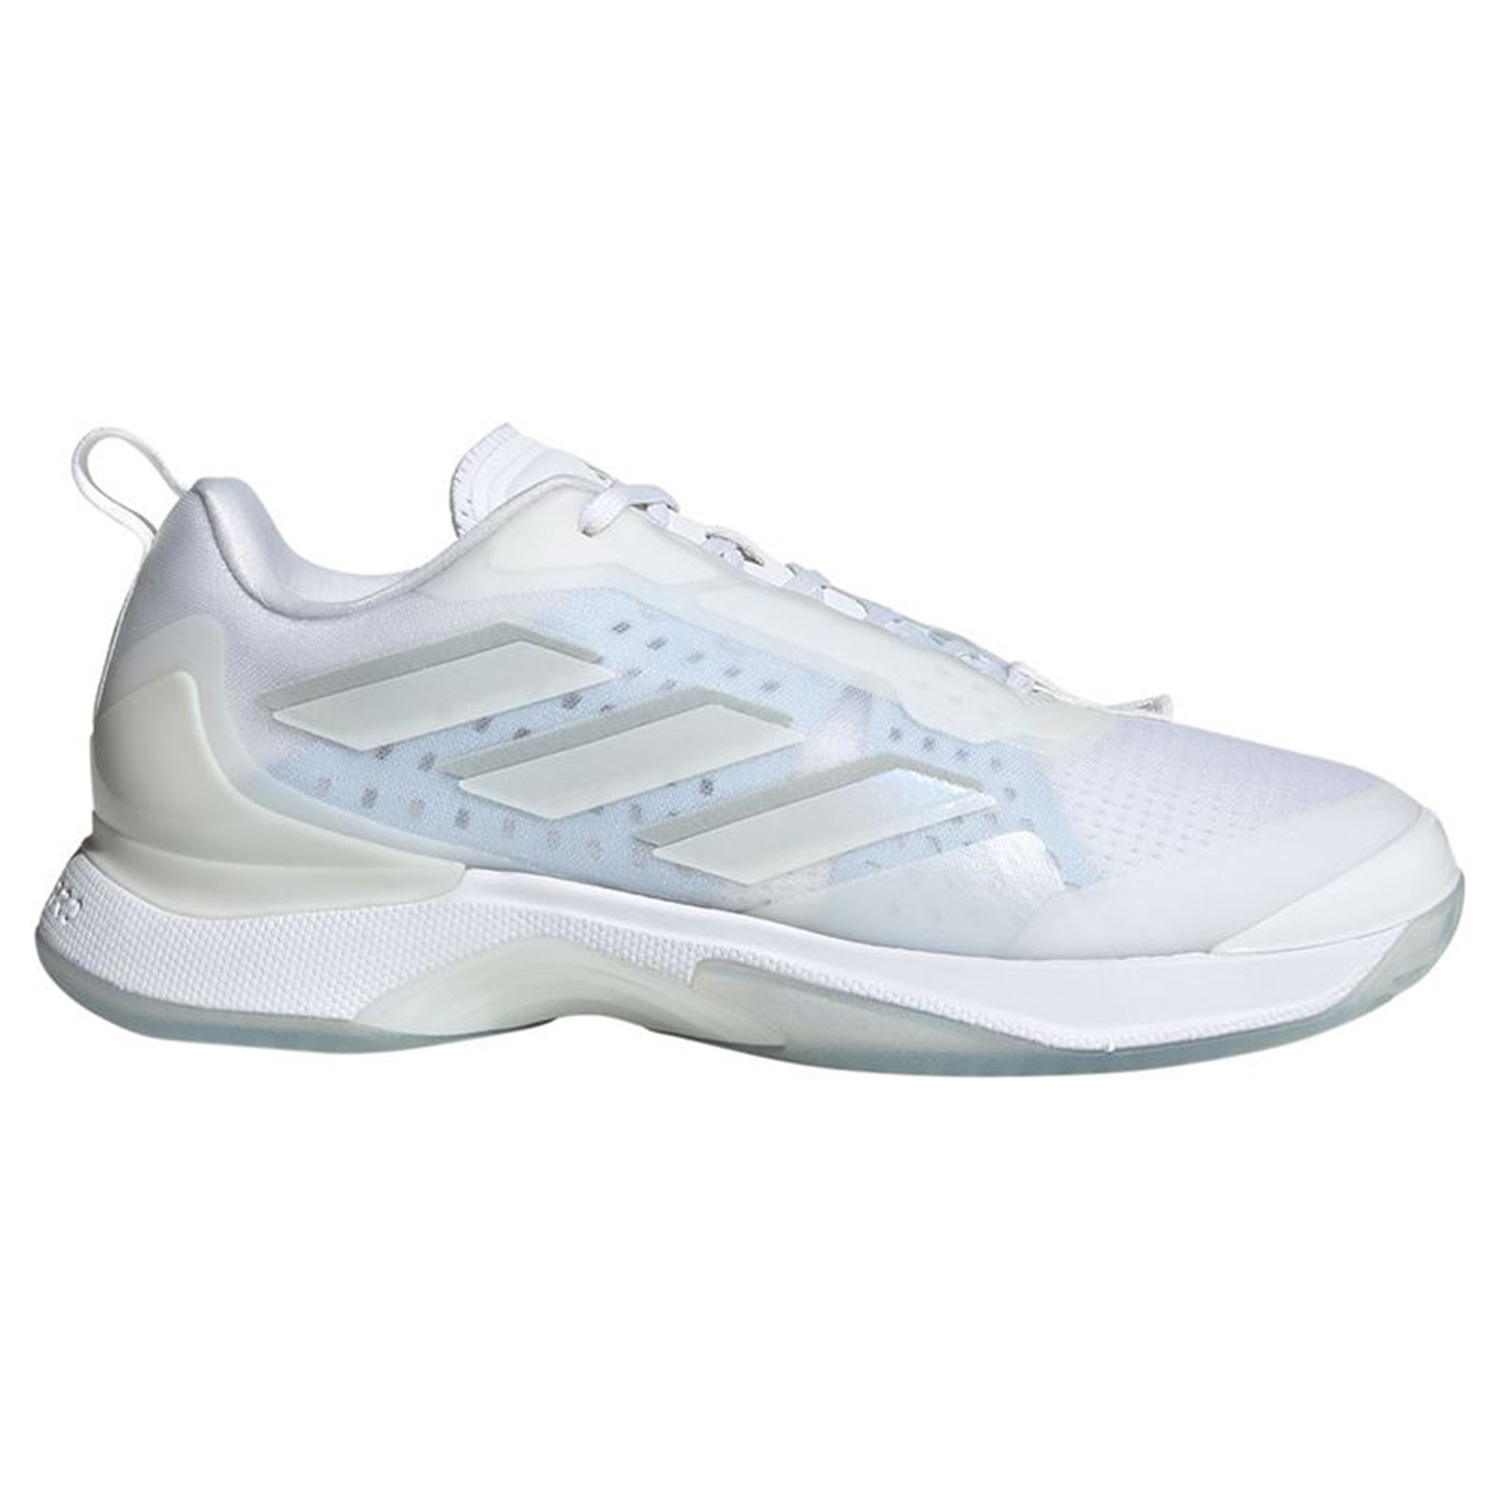 Buy tennis footwear, online tennis footwear Racket Kingdom